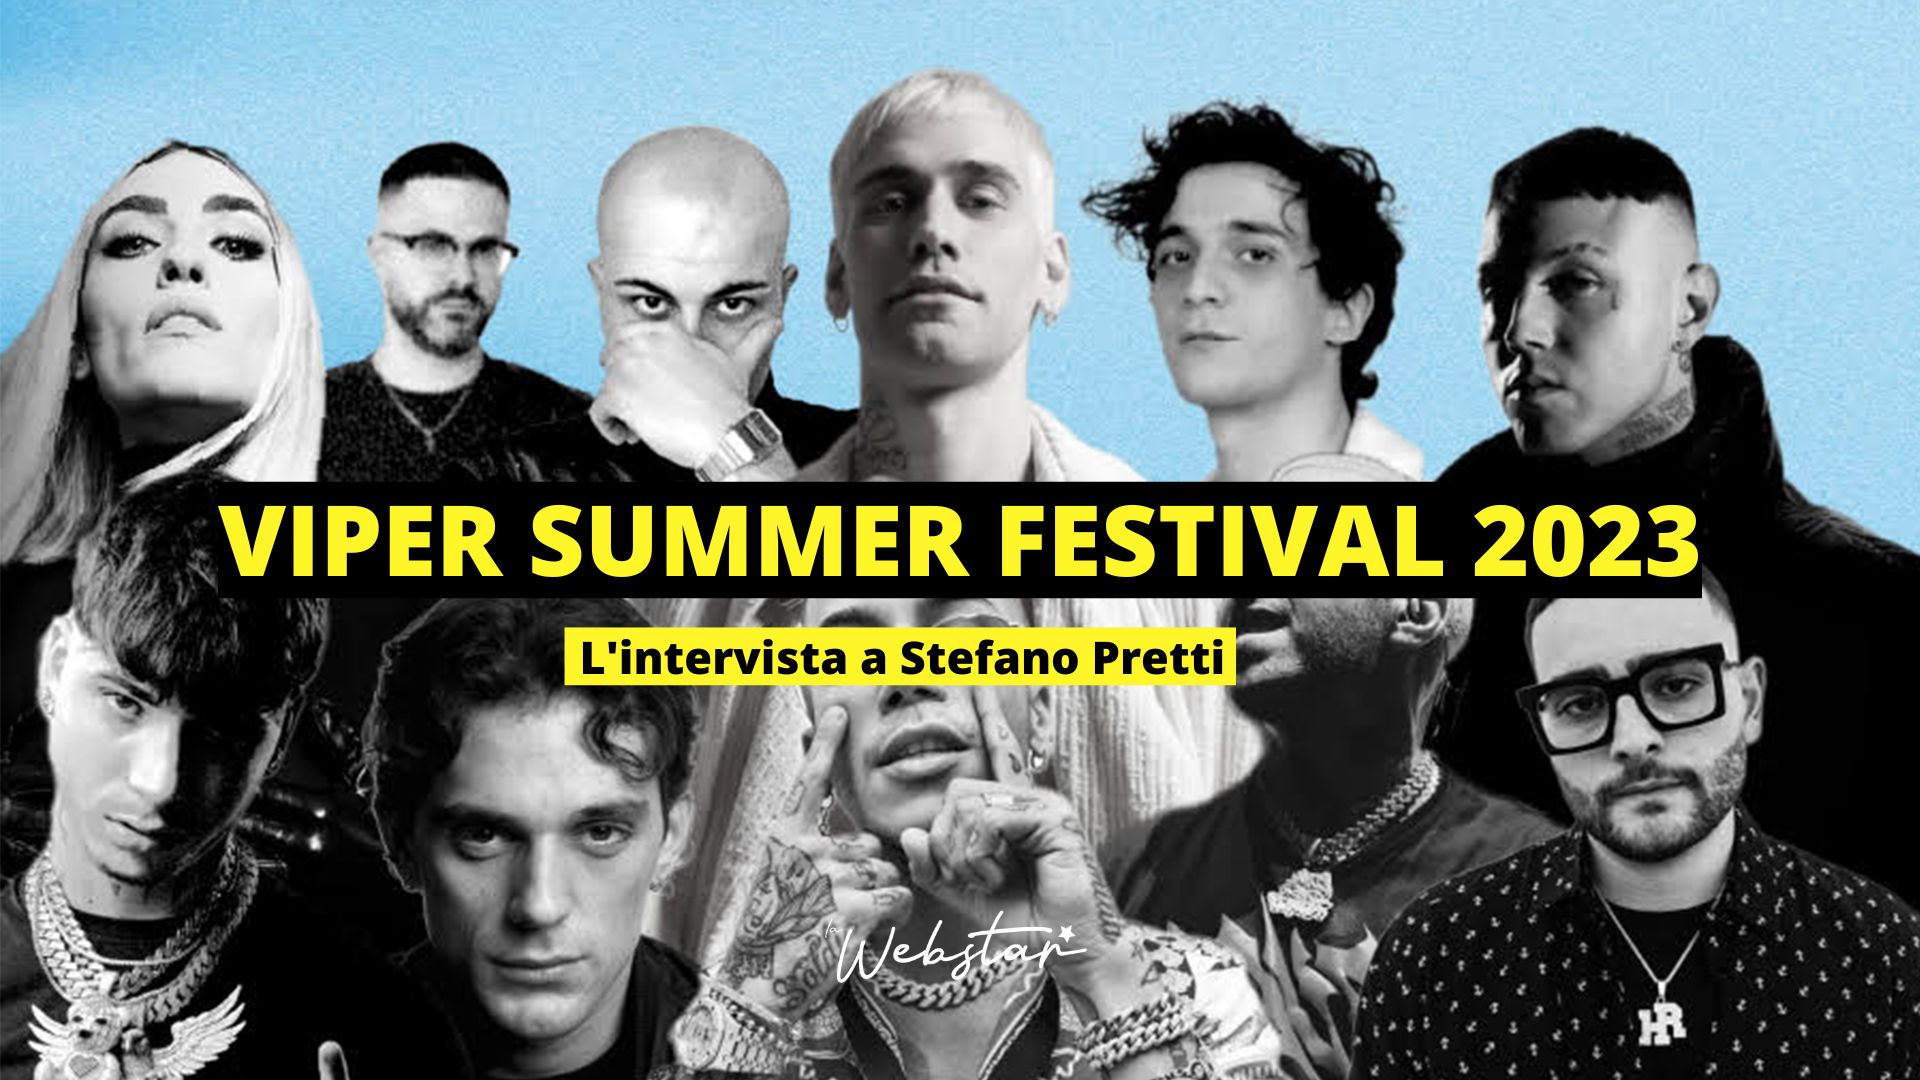 Viper Summer Festival 2023